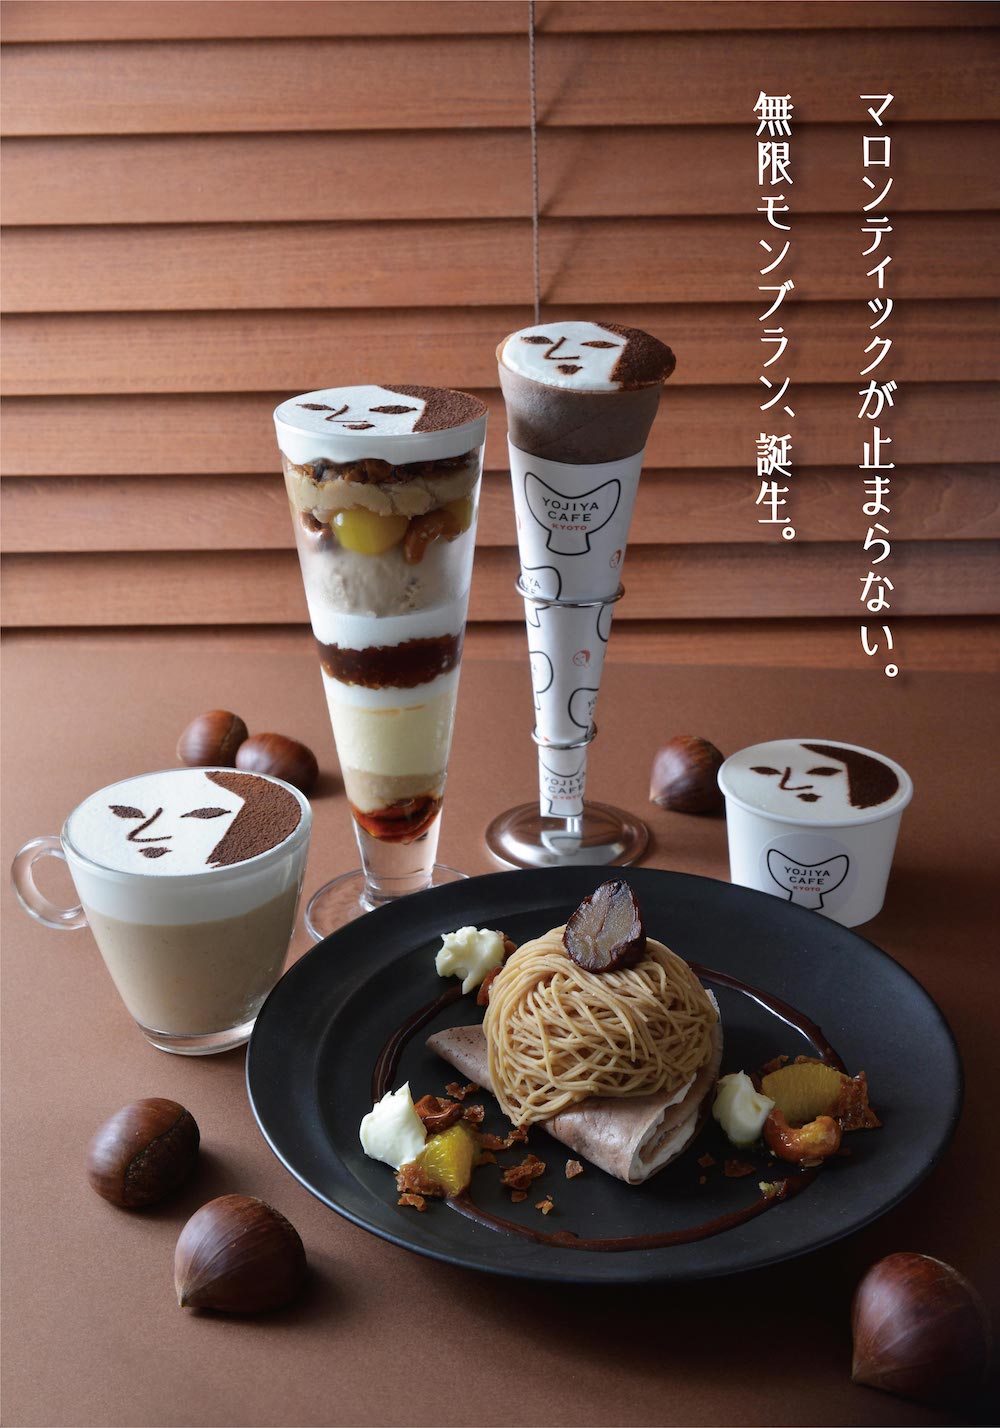 よーじやカフェは10月1日〜11月30日、栗をメインに使用したスイーツ5種類を販売スタートする。